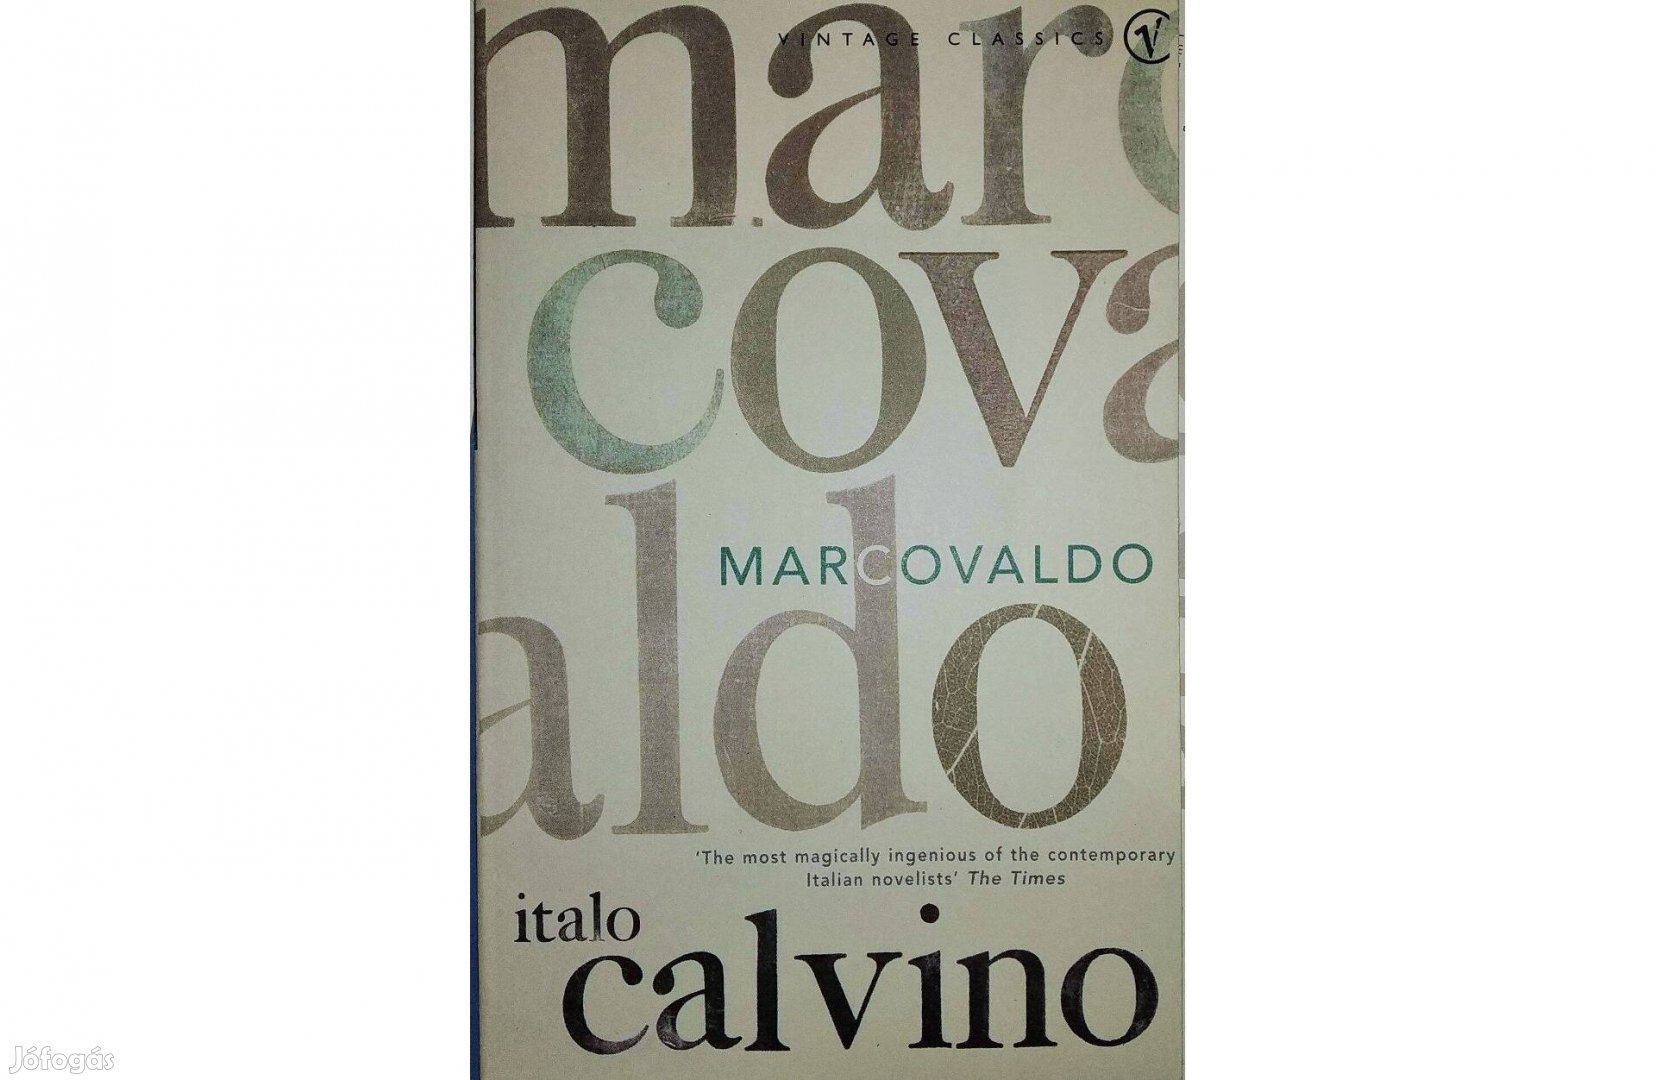 Marcovaldo Italo Calvino Olvasatlan